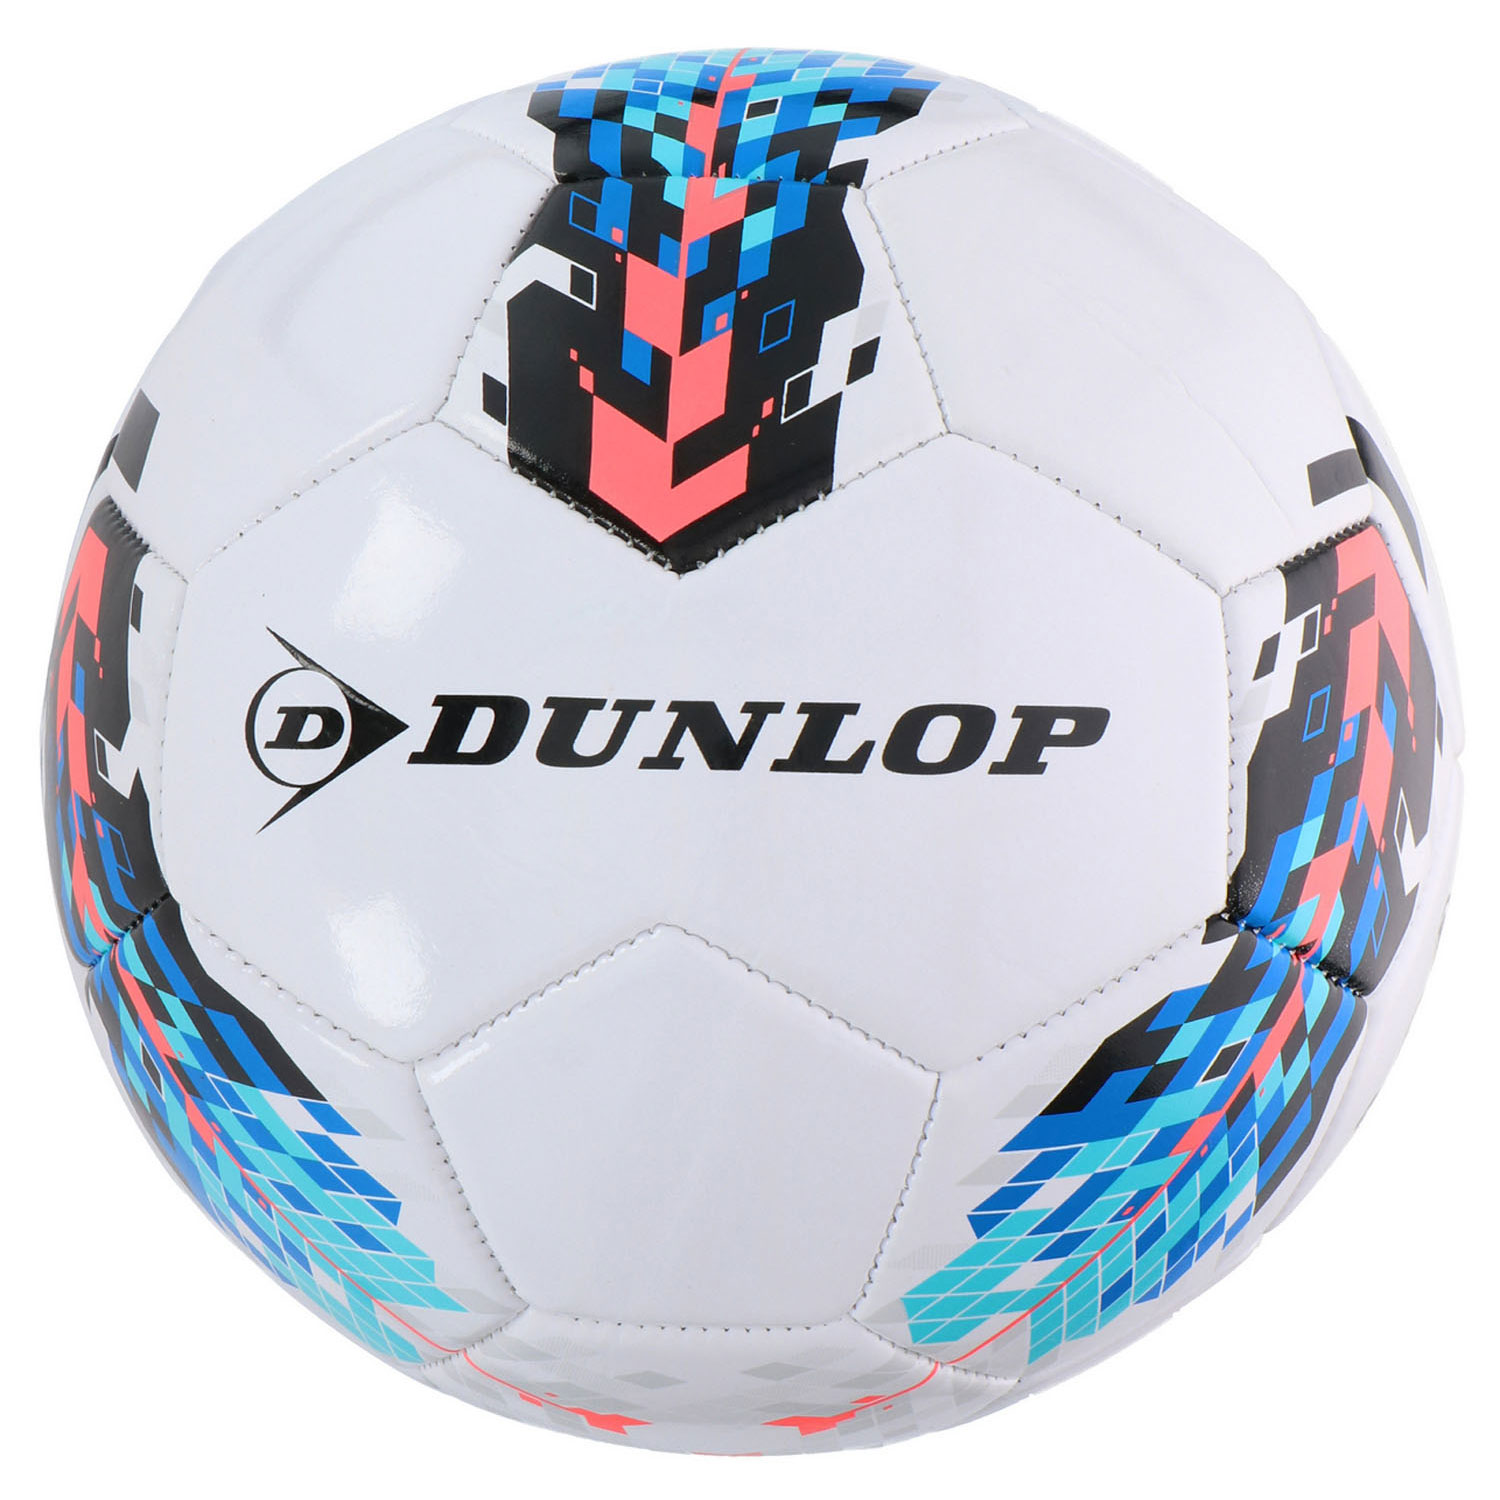 Dunlop Fußball, Größe 5